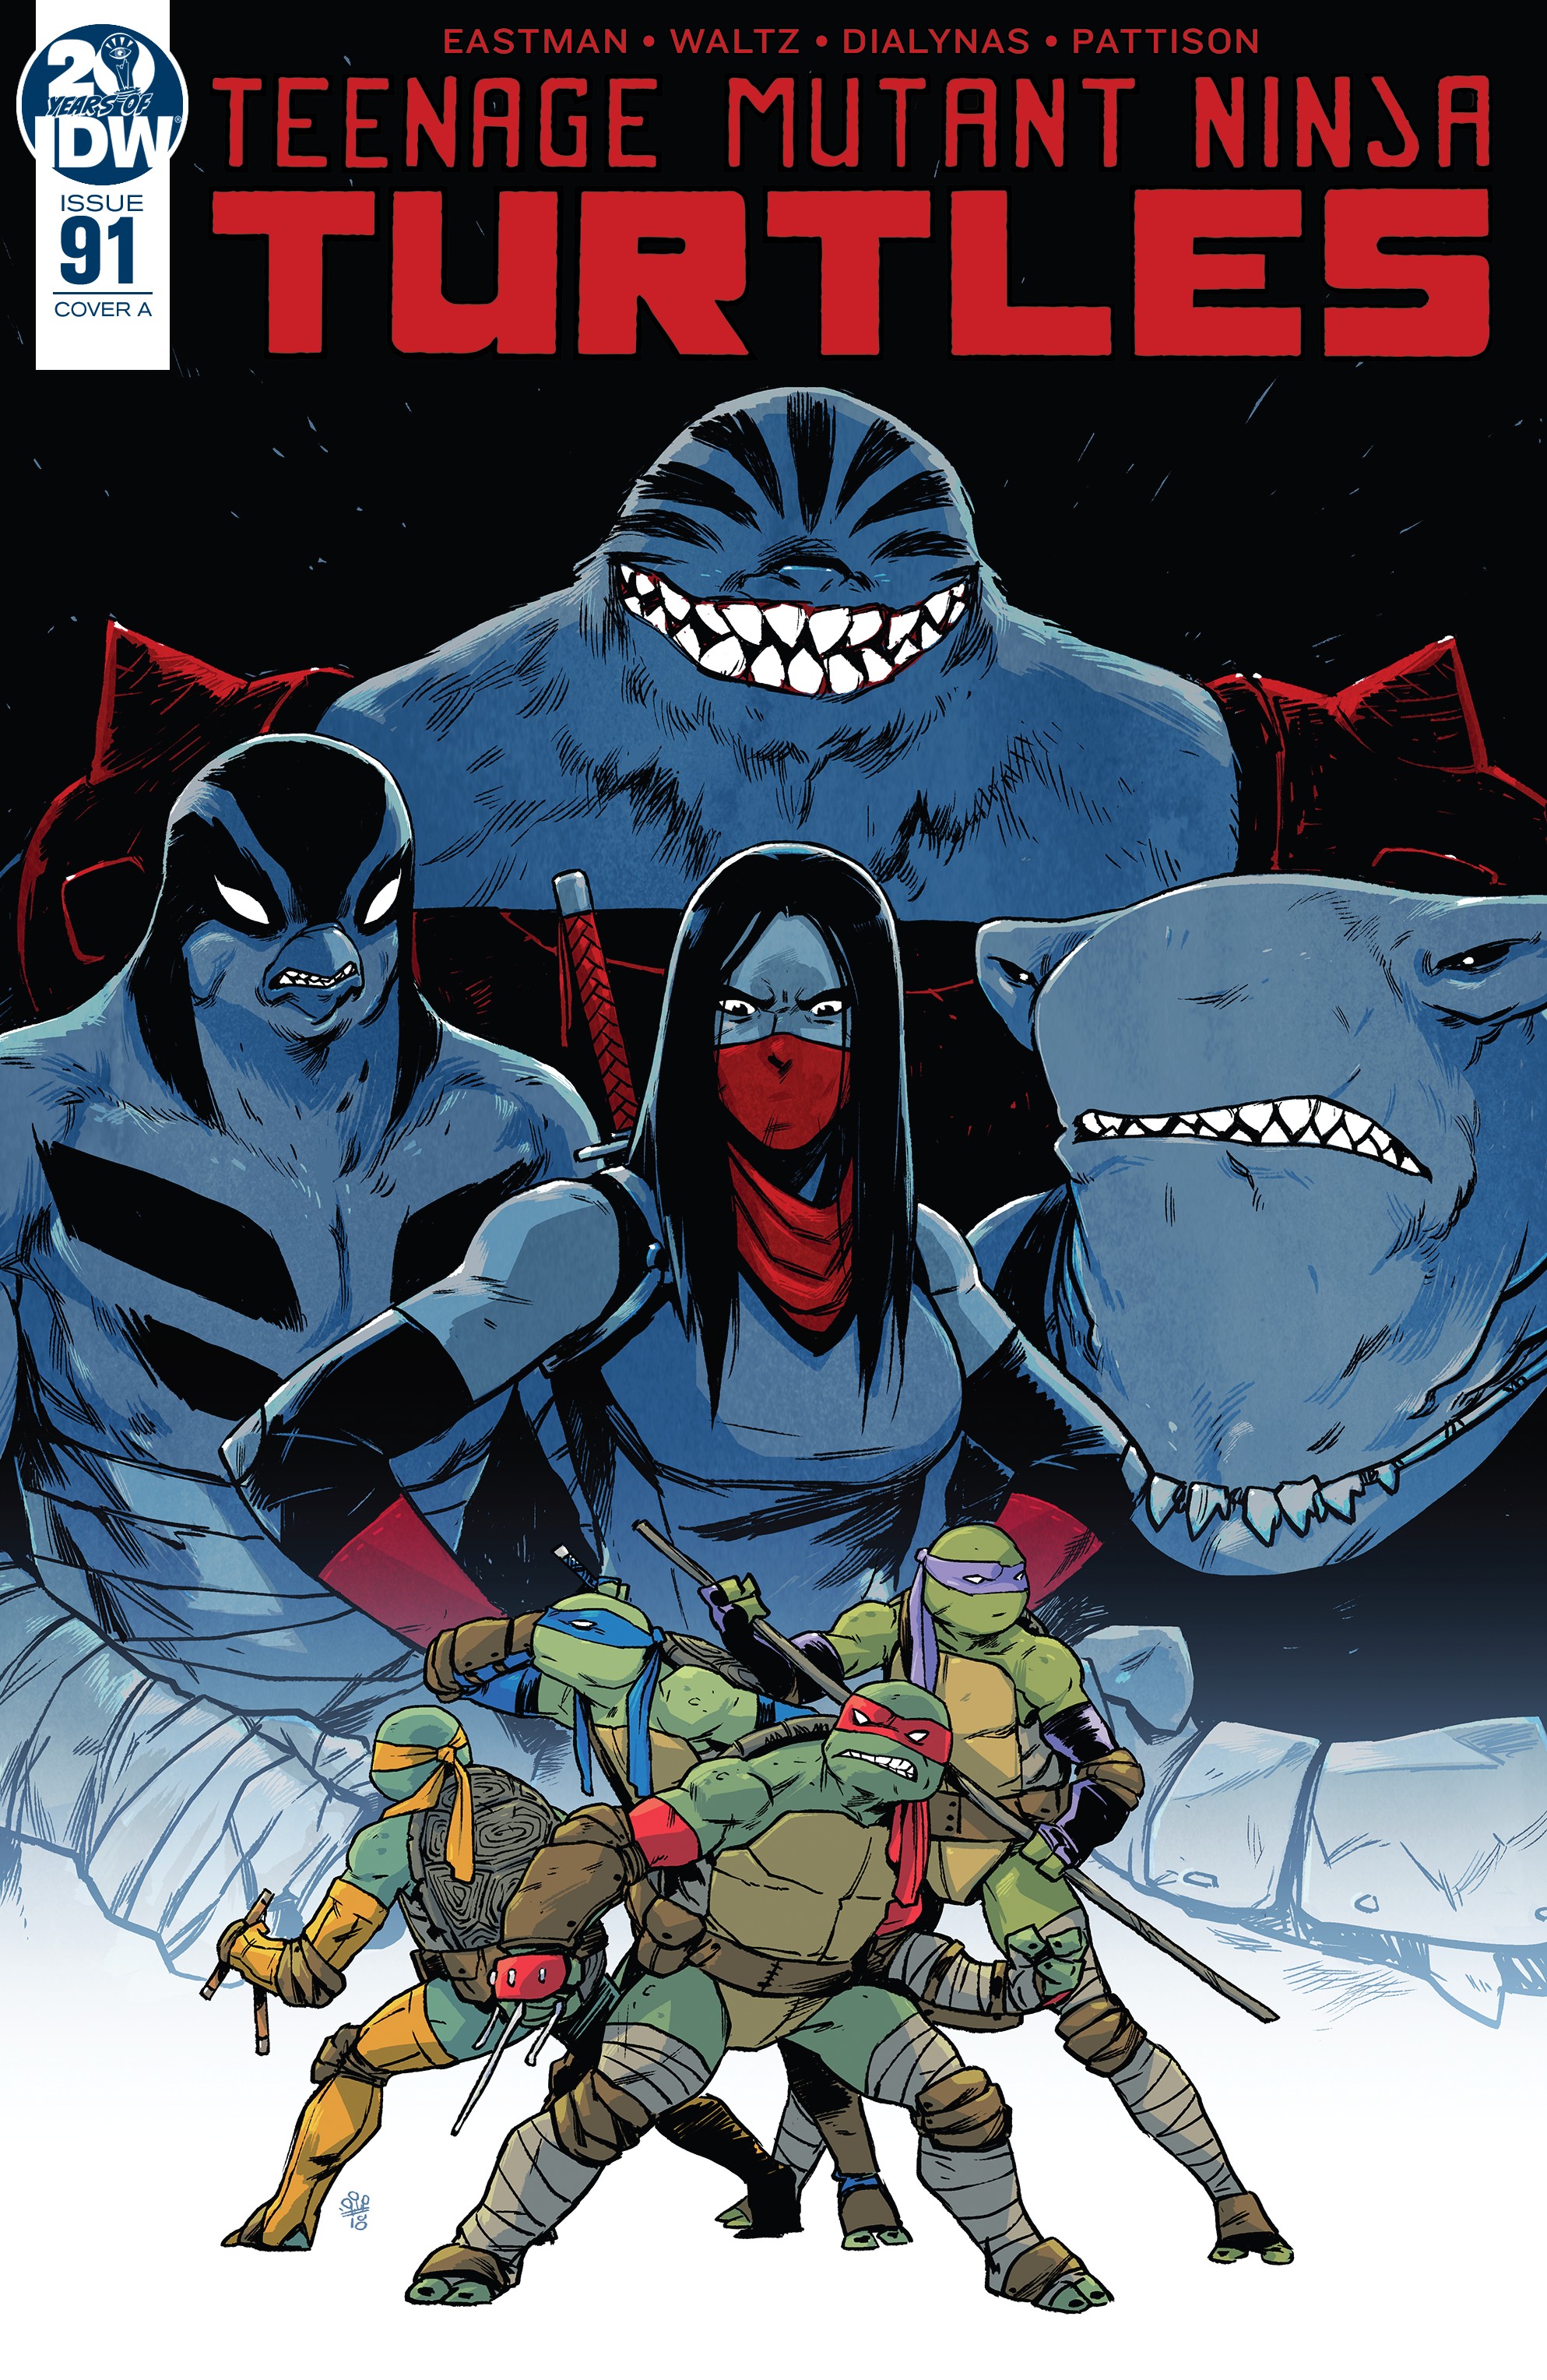 Teenage Mutant Ninja Turtles Issue 91 Idw Tmntpedia Fandom